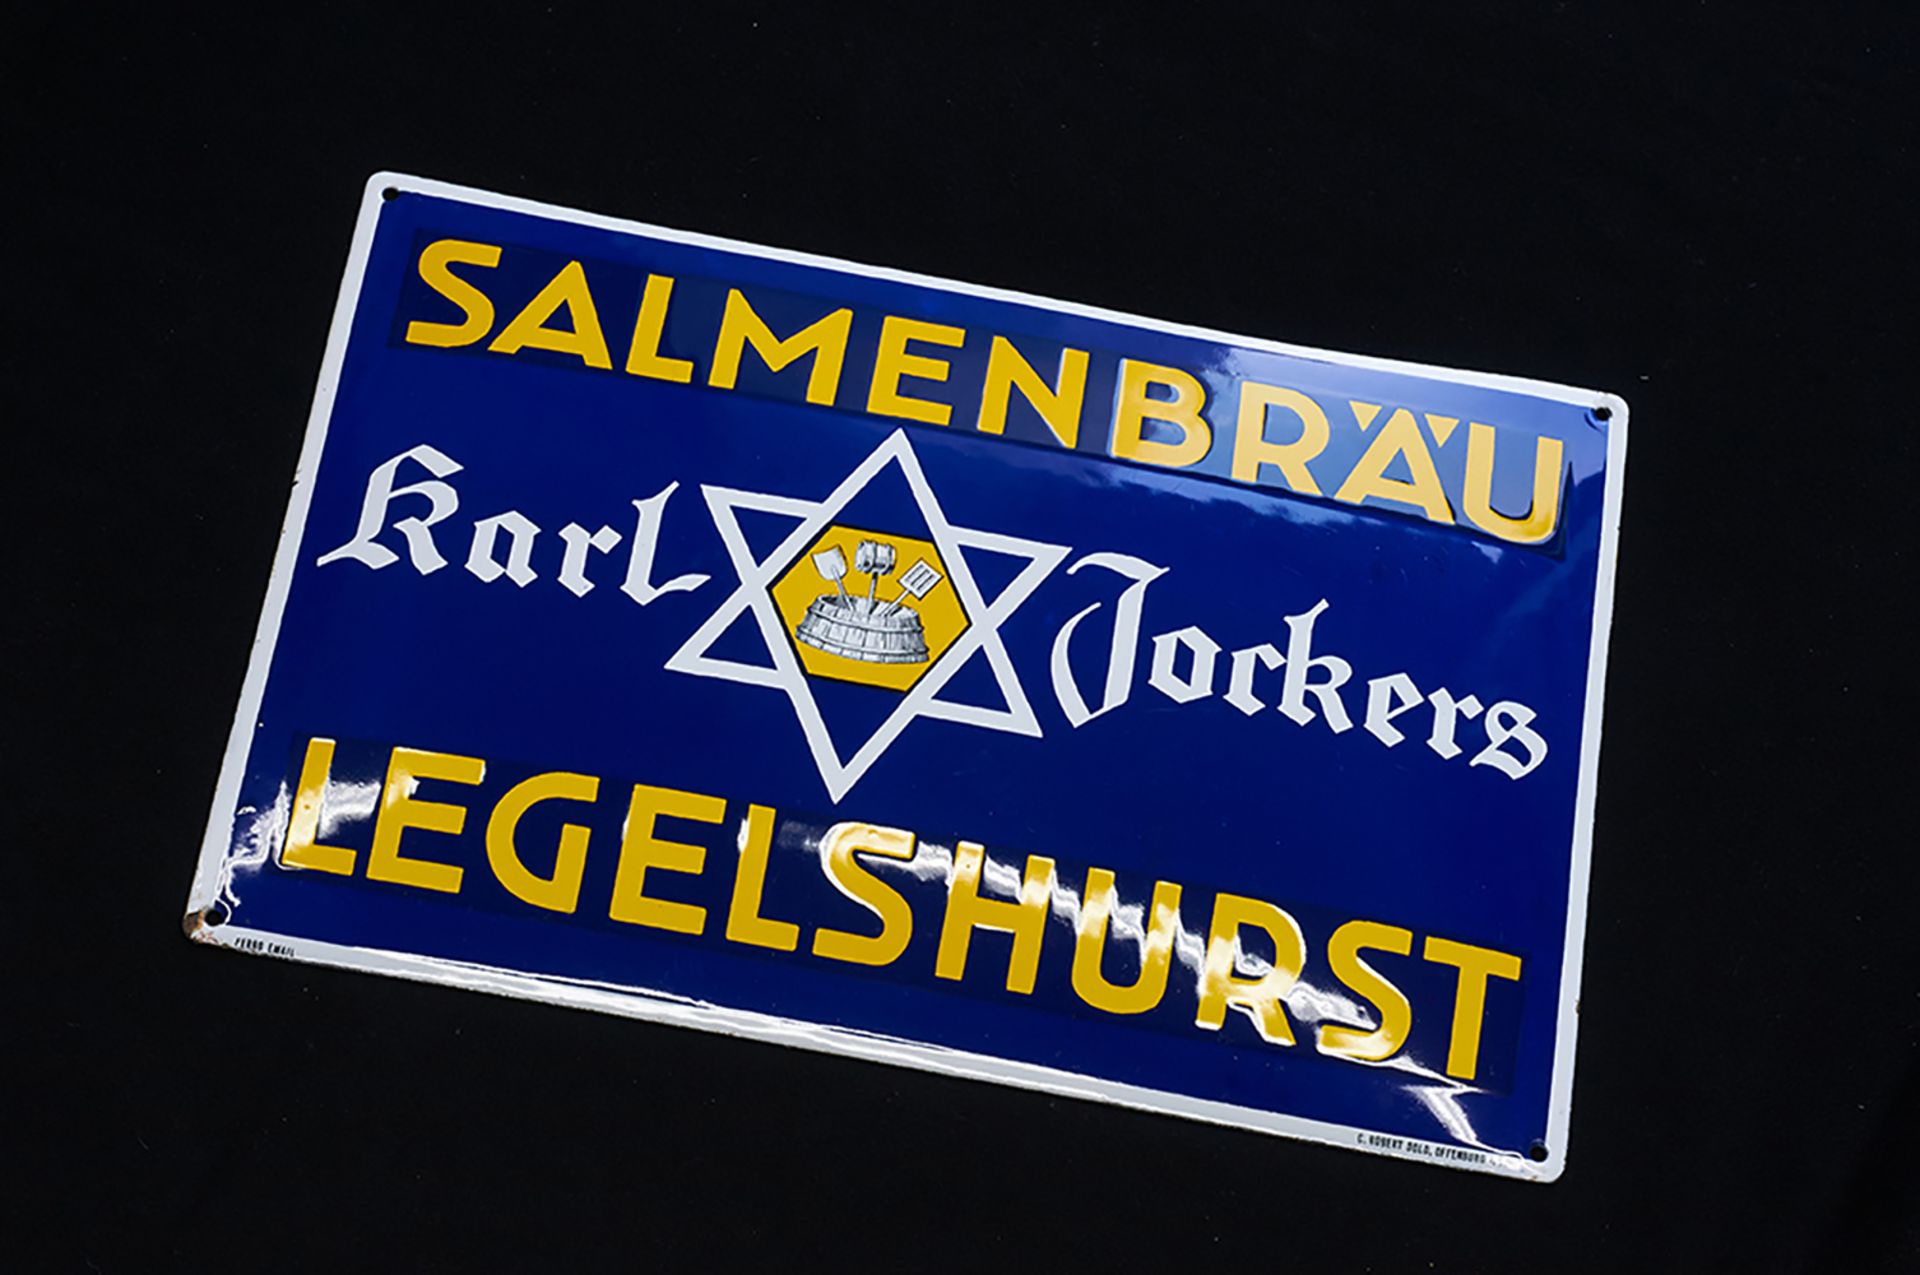 Salmenbräu Karl Jockers - Bild 3 aus 5